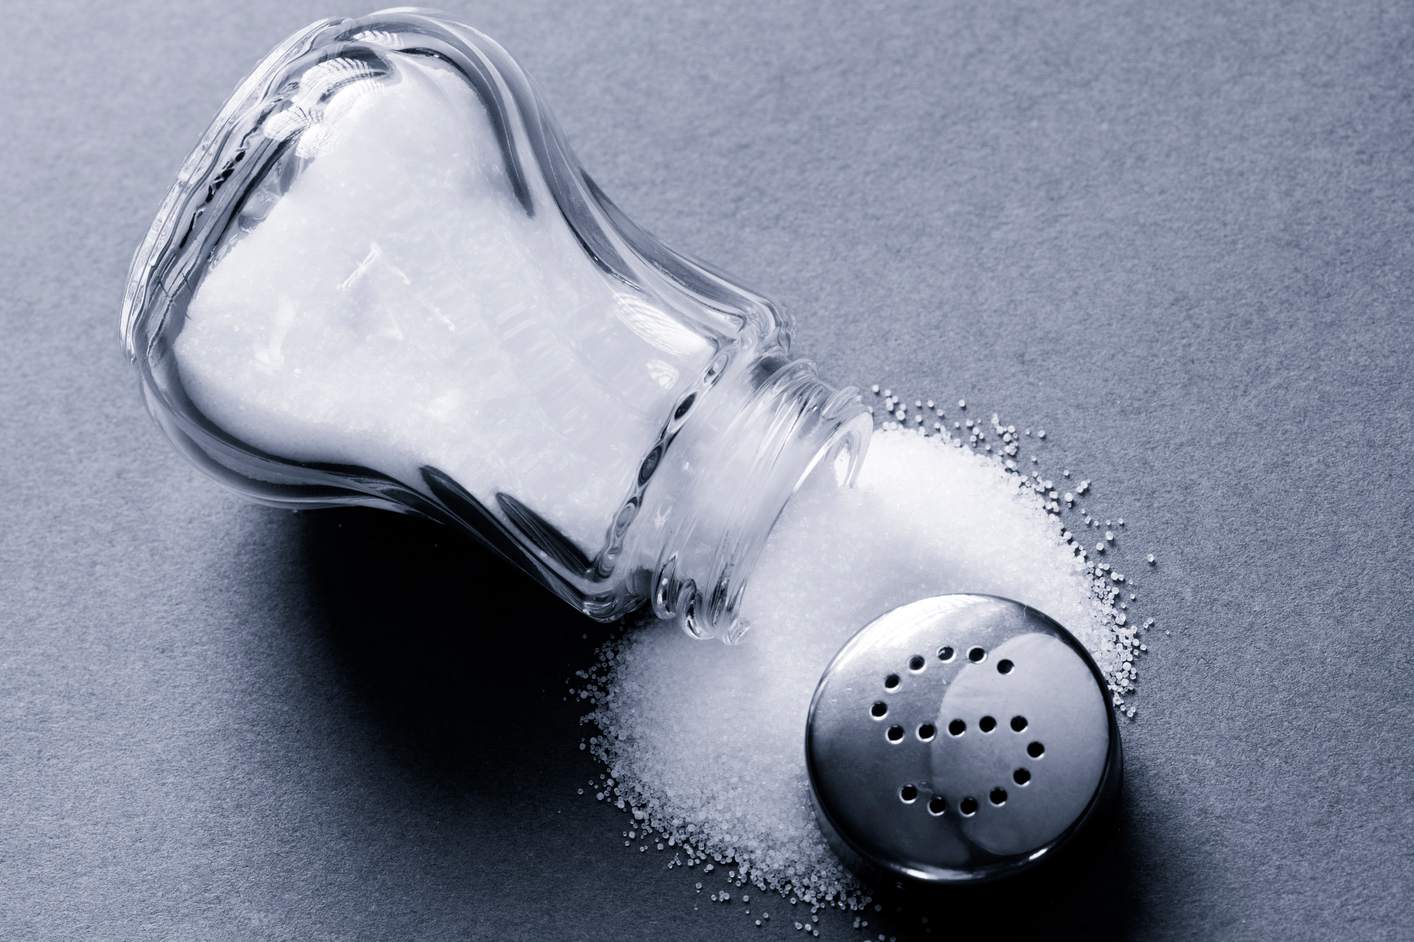 Open salt shaker